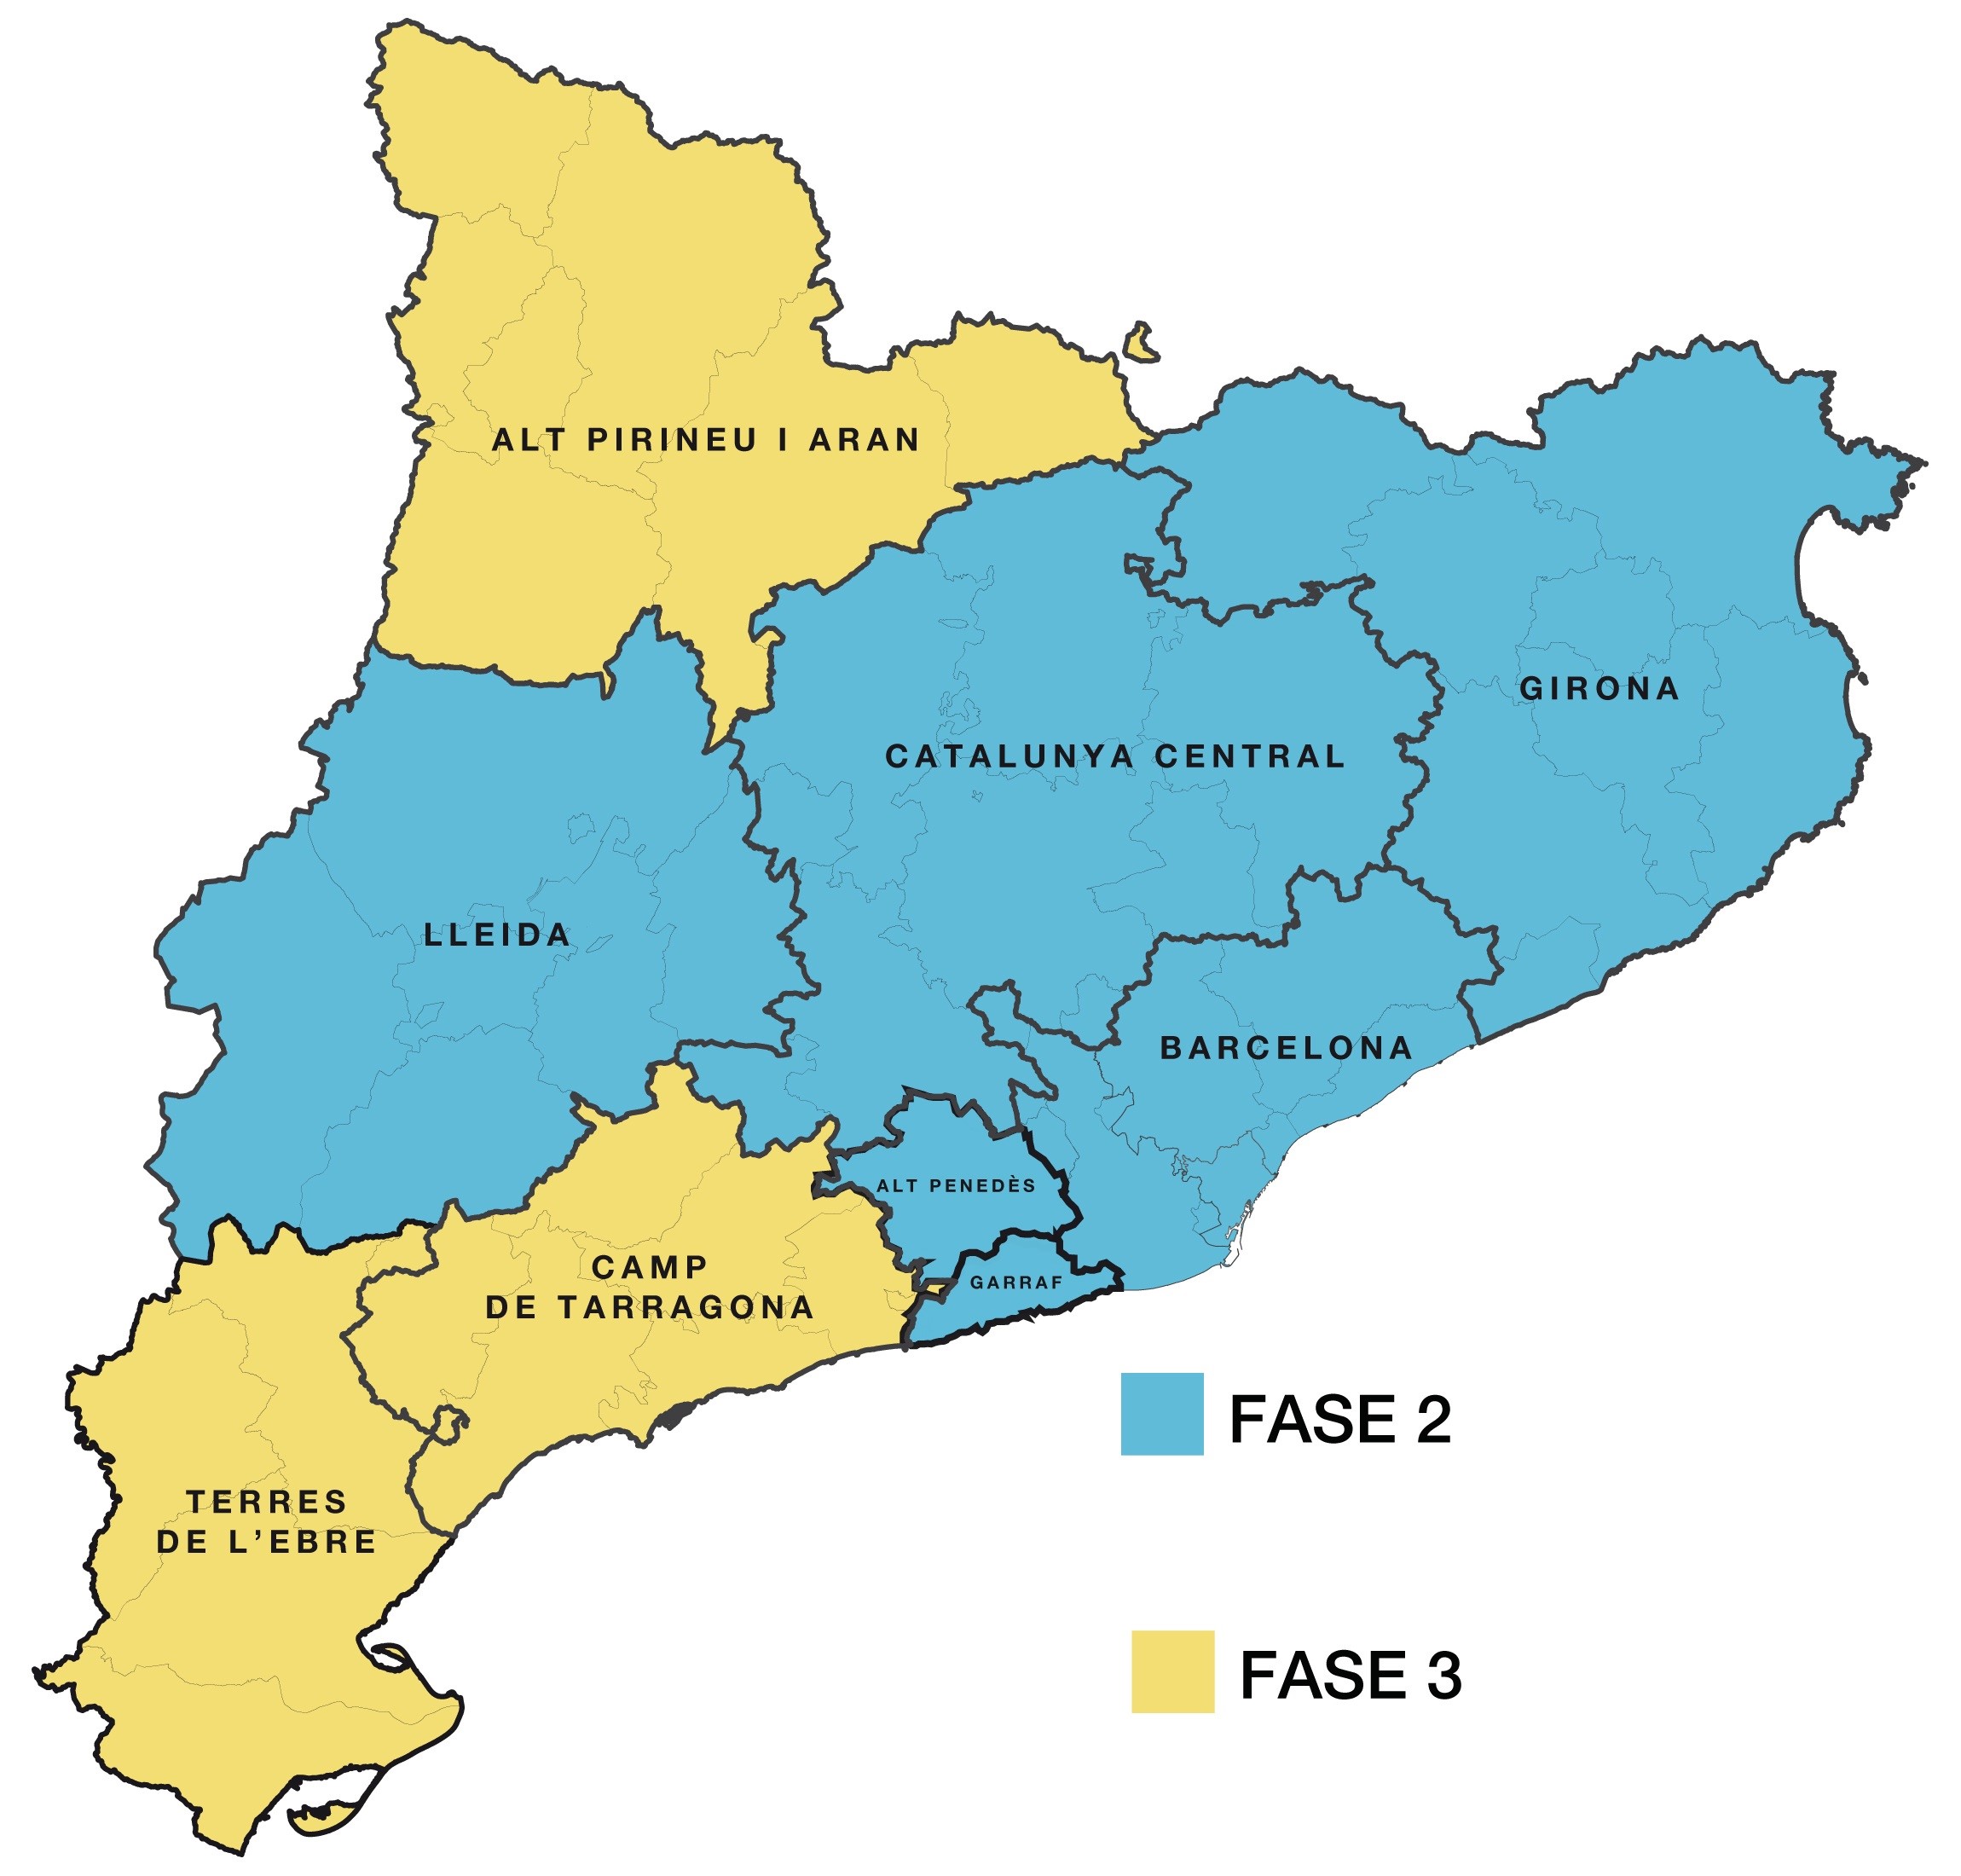 DESCONFINAMENT PROGRESSIU: Barcelona, les regions metropolitanes nord i sud i Lleida avancen a la fase 2 del desconfinament